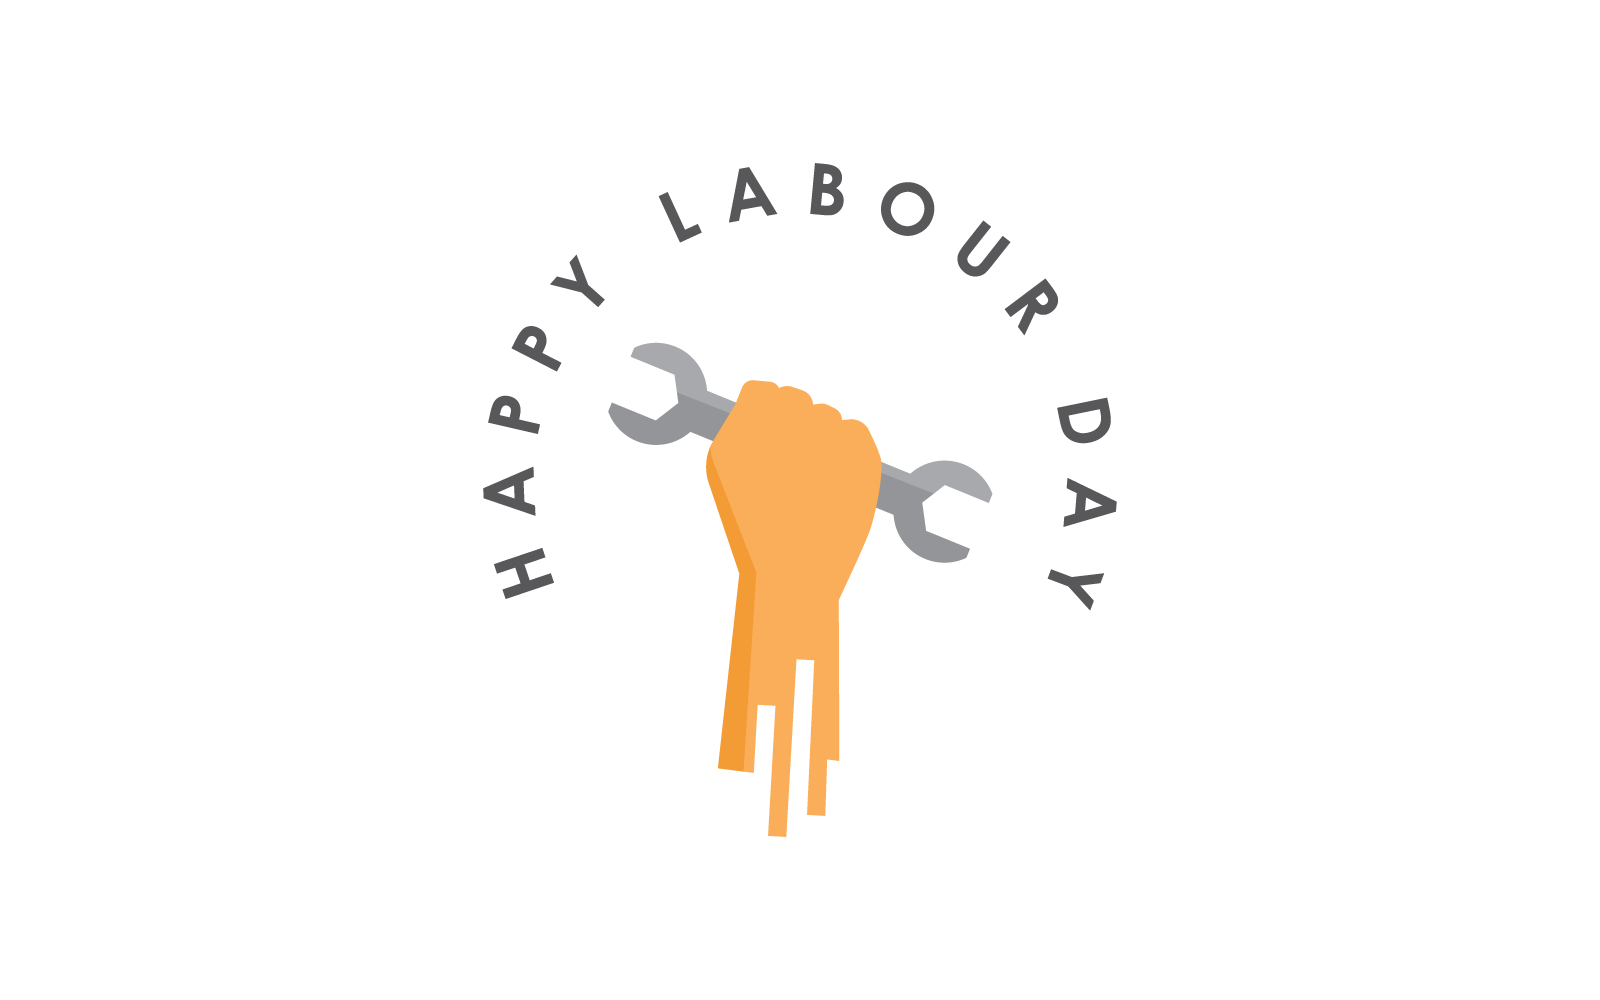 Šťastný den práce 1. května symbol a logo plochý design